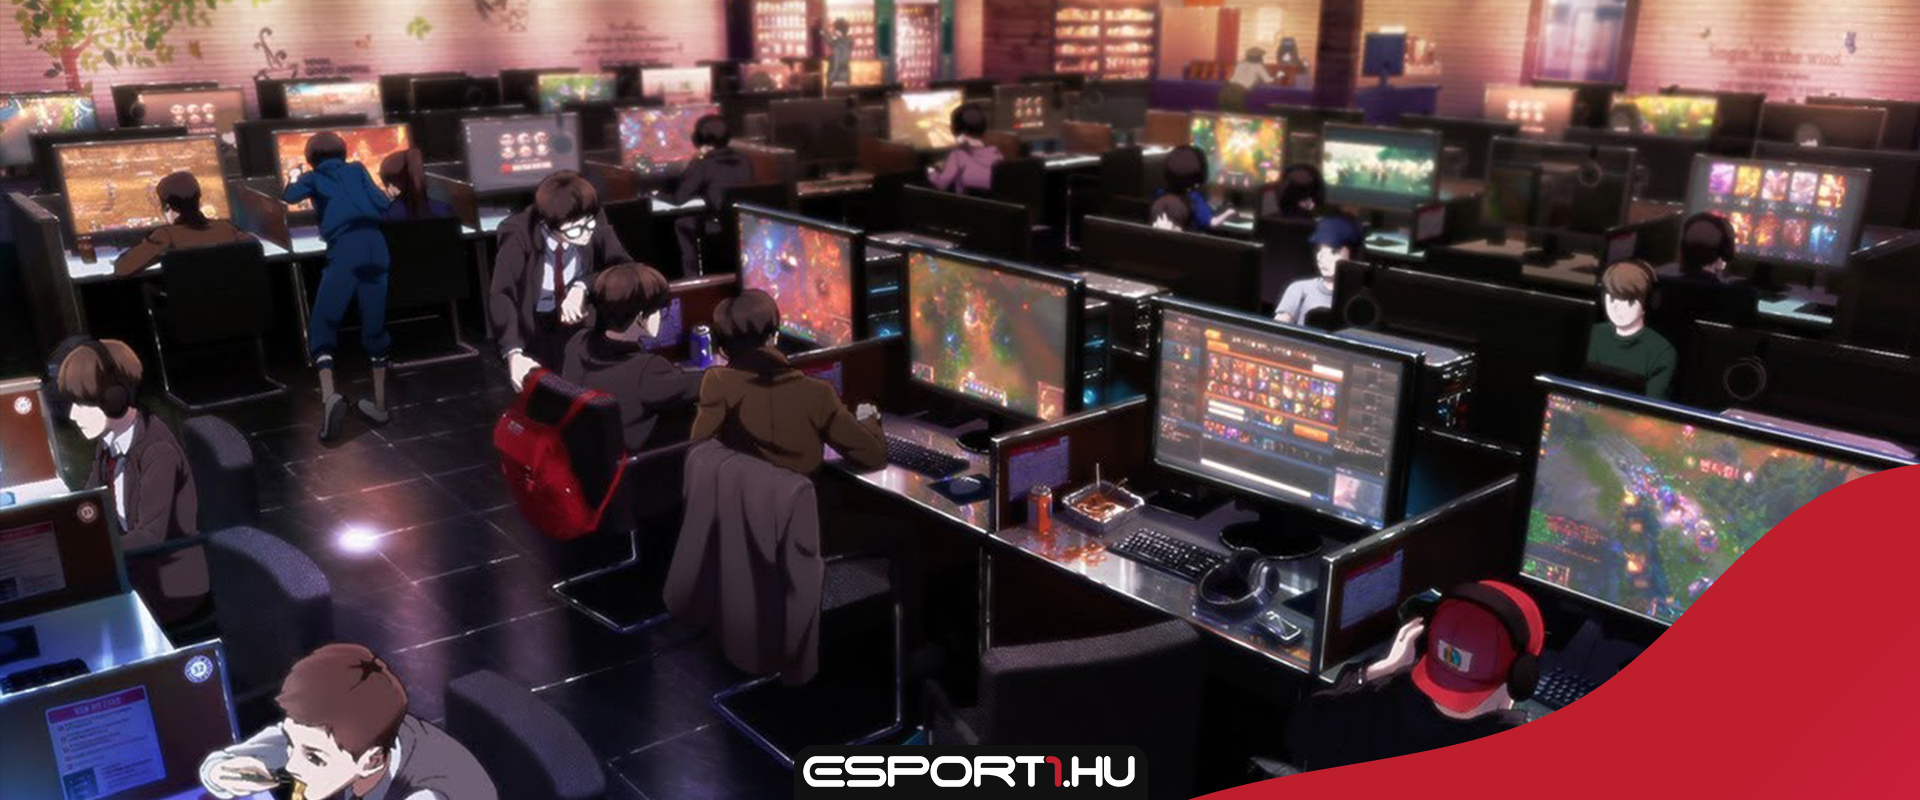 A koreai PC bangekben minden második gépen LoL-oznak a játékosok